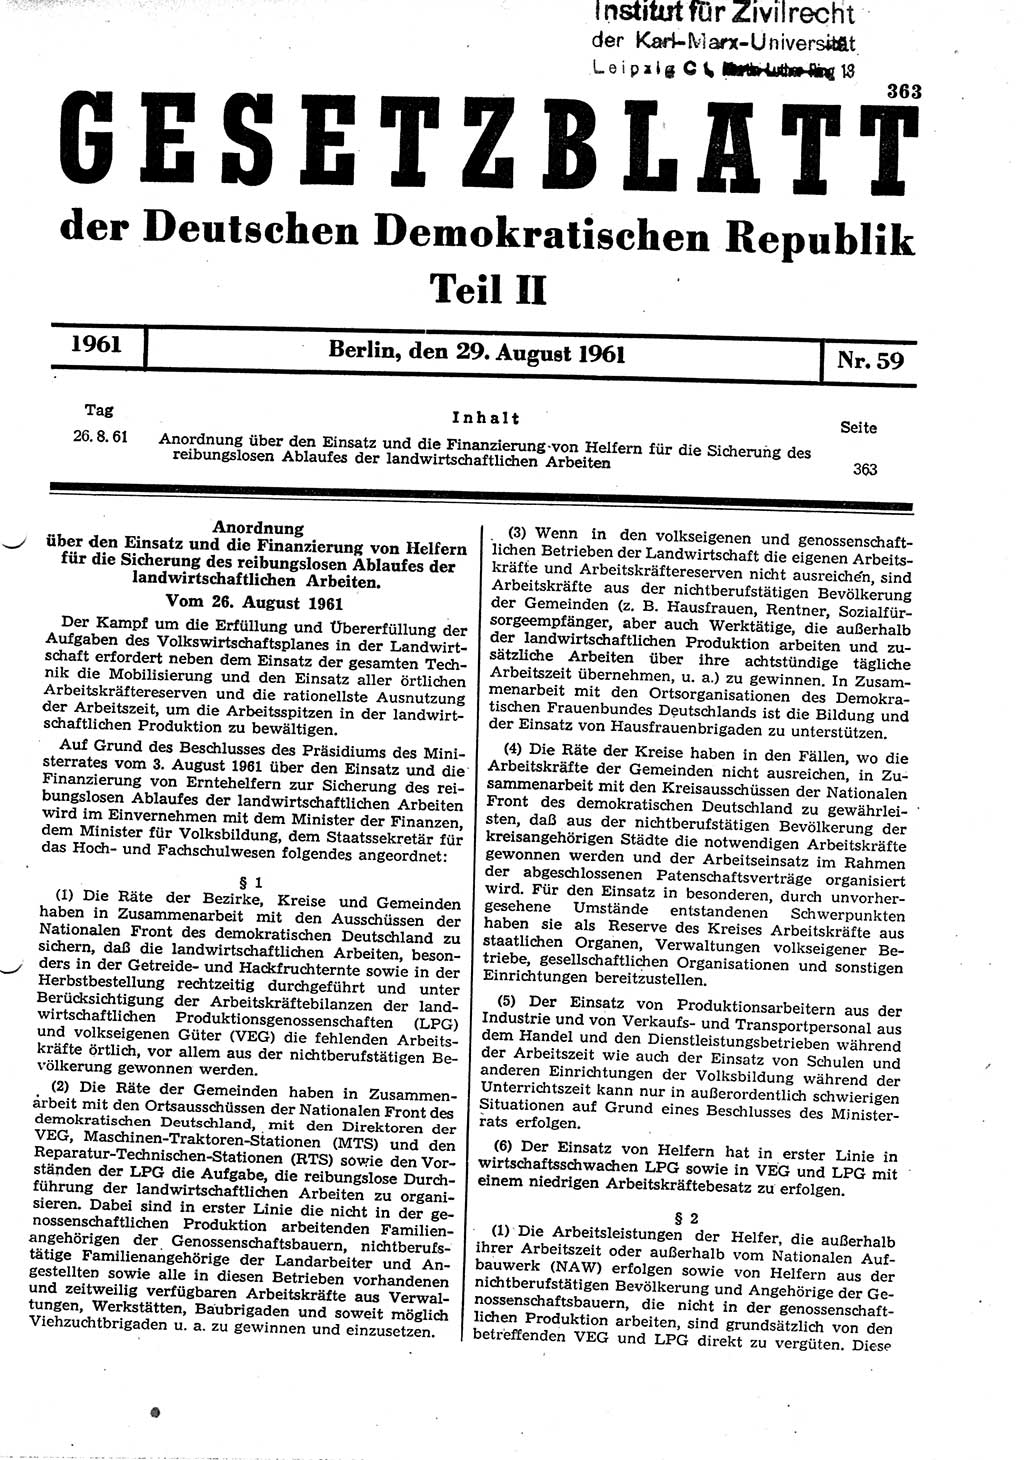 Gesetzblatt (GBl.) der Deutschen Demokratischen Republik (DDR) Teil ⅠⅠ 1961, Seite 363 (GBl. DDR ⅠⅠ 1961, S. 363)